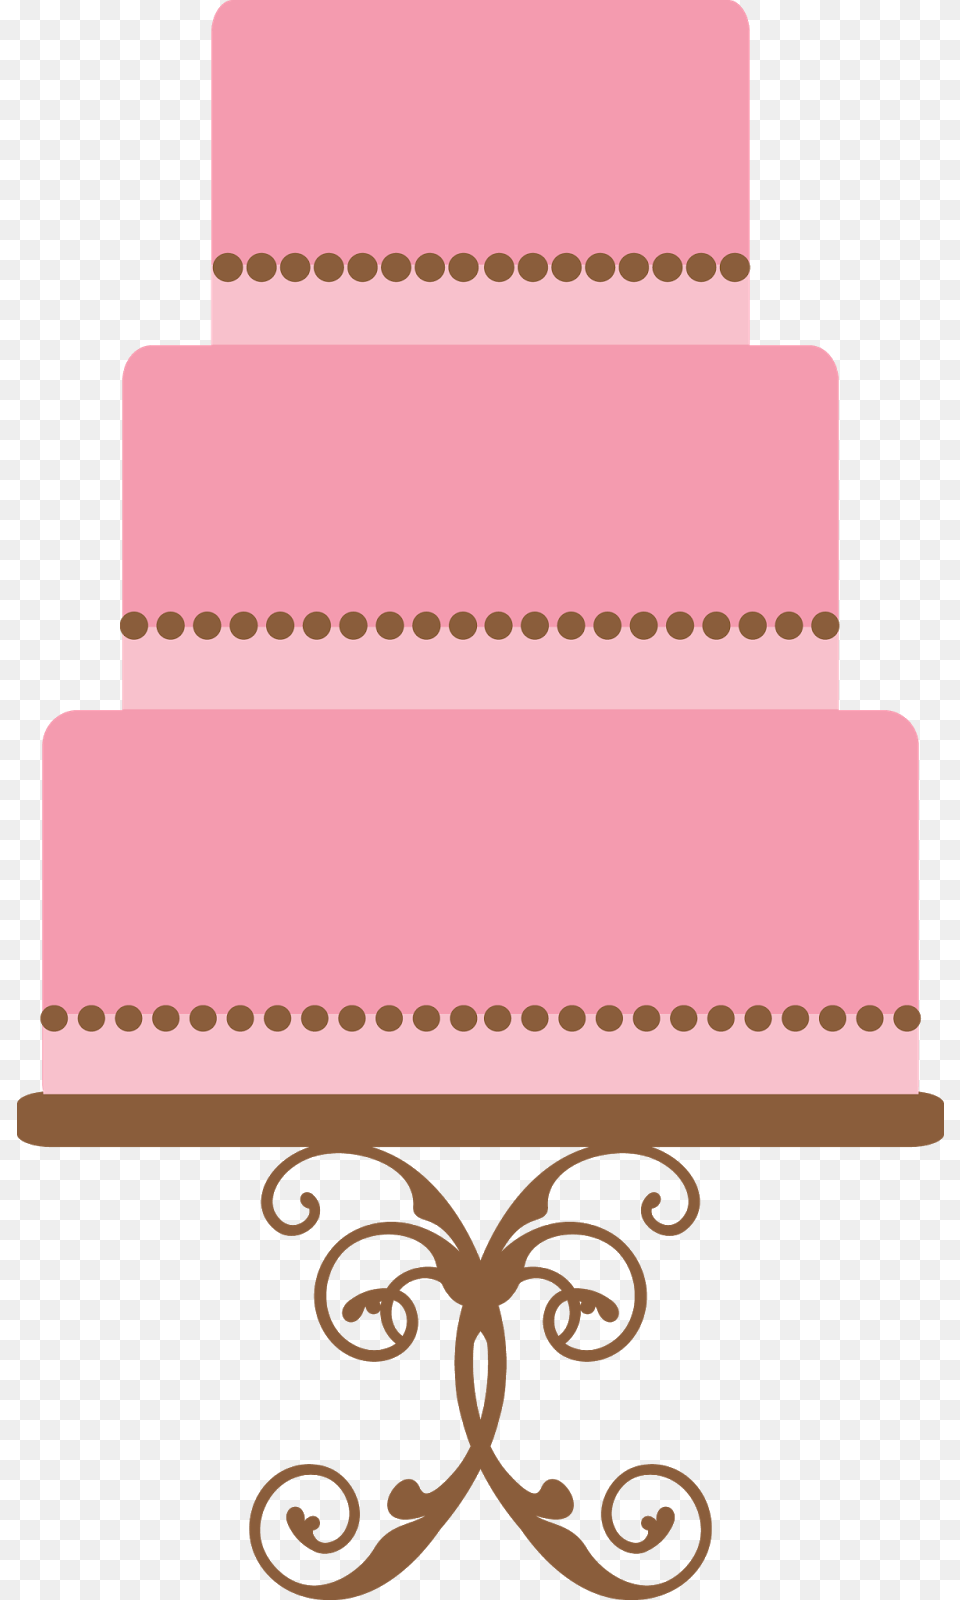 Thumb Image Cake, Dessert, Food, Wedding, Wedding Cake Free Png Download